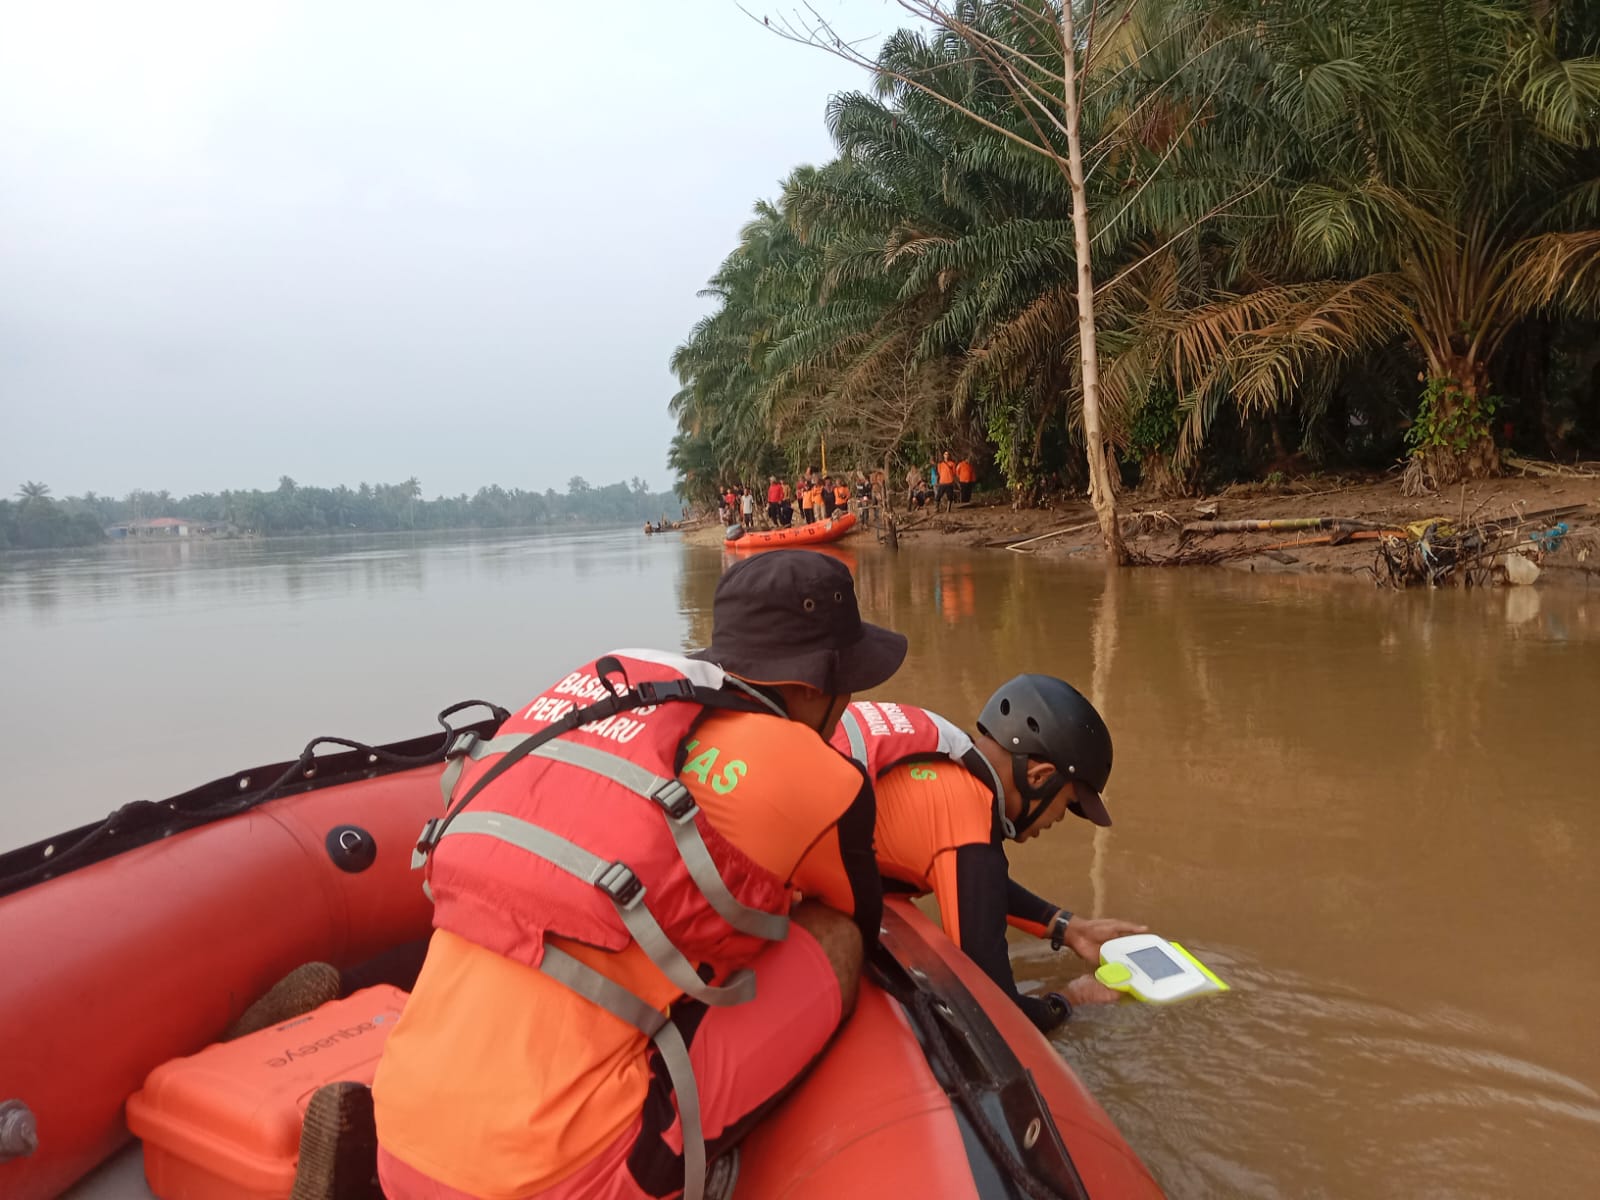 Upaya Pencarian Terus Dilakukan SAR Pekanbaru "Pencarian Korban Tenggelam Di Sungai Indragiri Hulu"